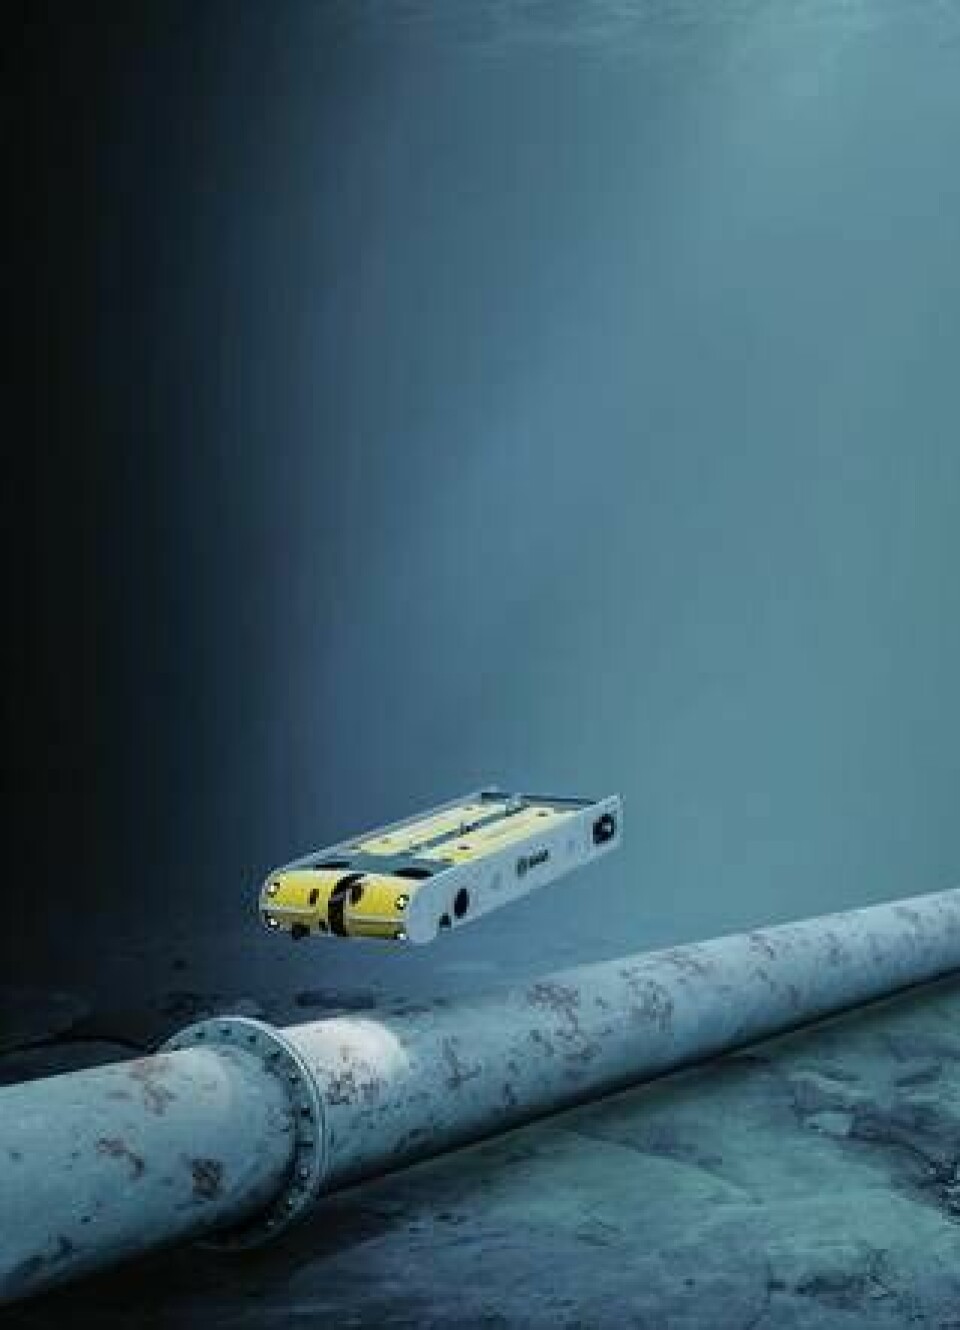 Ett svenskt exempel på autonoma undervattensfarkoster är Saab Seaeye, här av modellen Sabertooth som är en ROV/AUV-hybrid. Foto: Saab